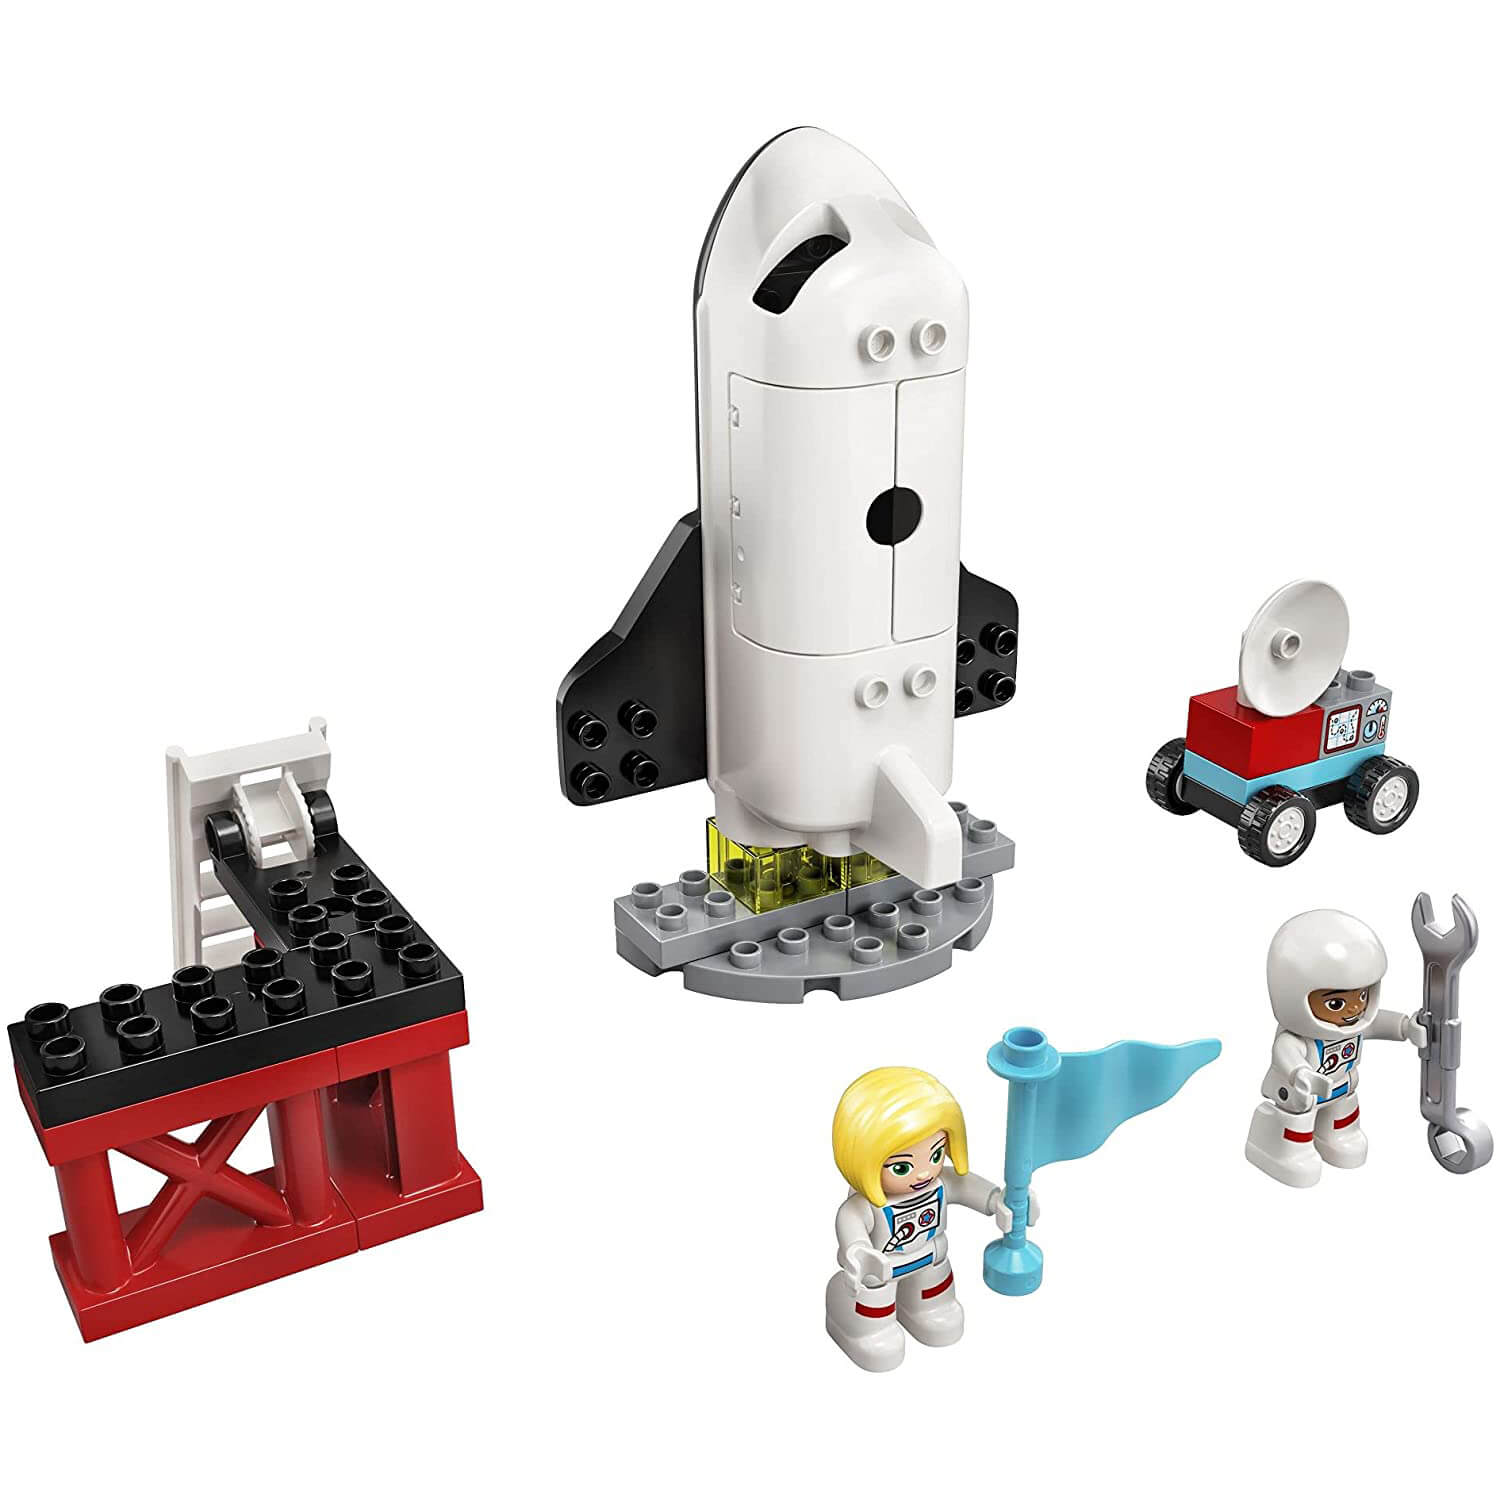 LEGO DUPLO Space Shuttle Mission 23 Piece Building Set (10944)